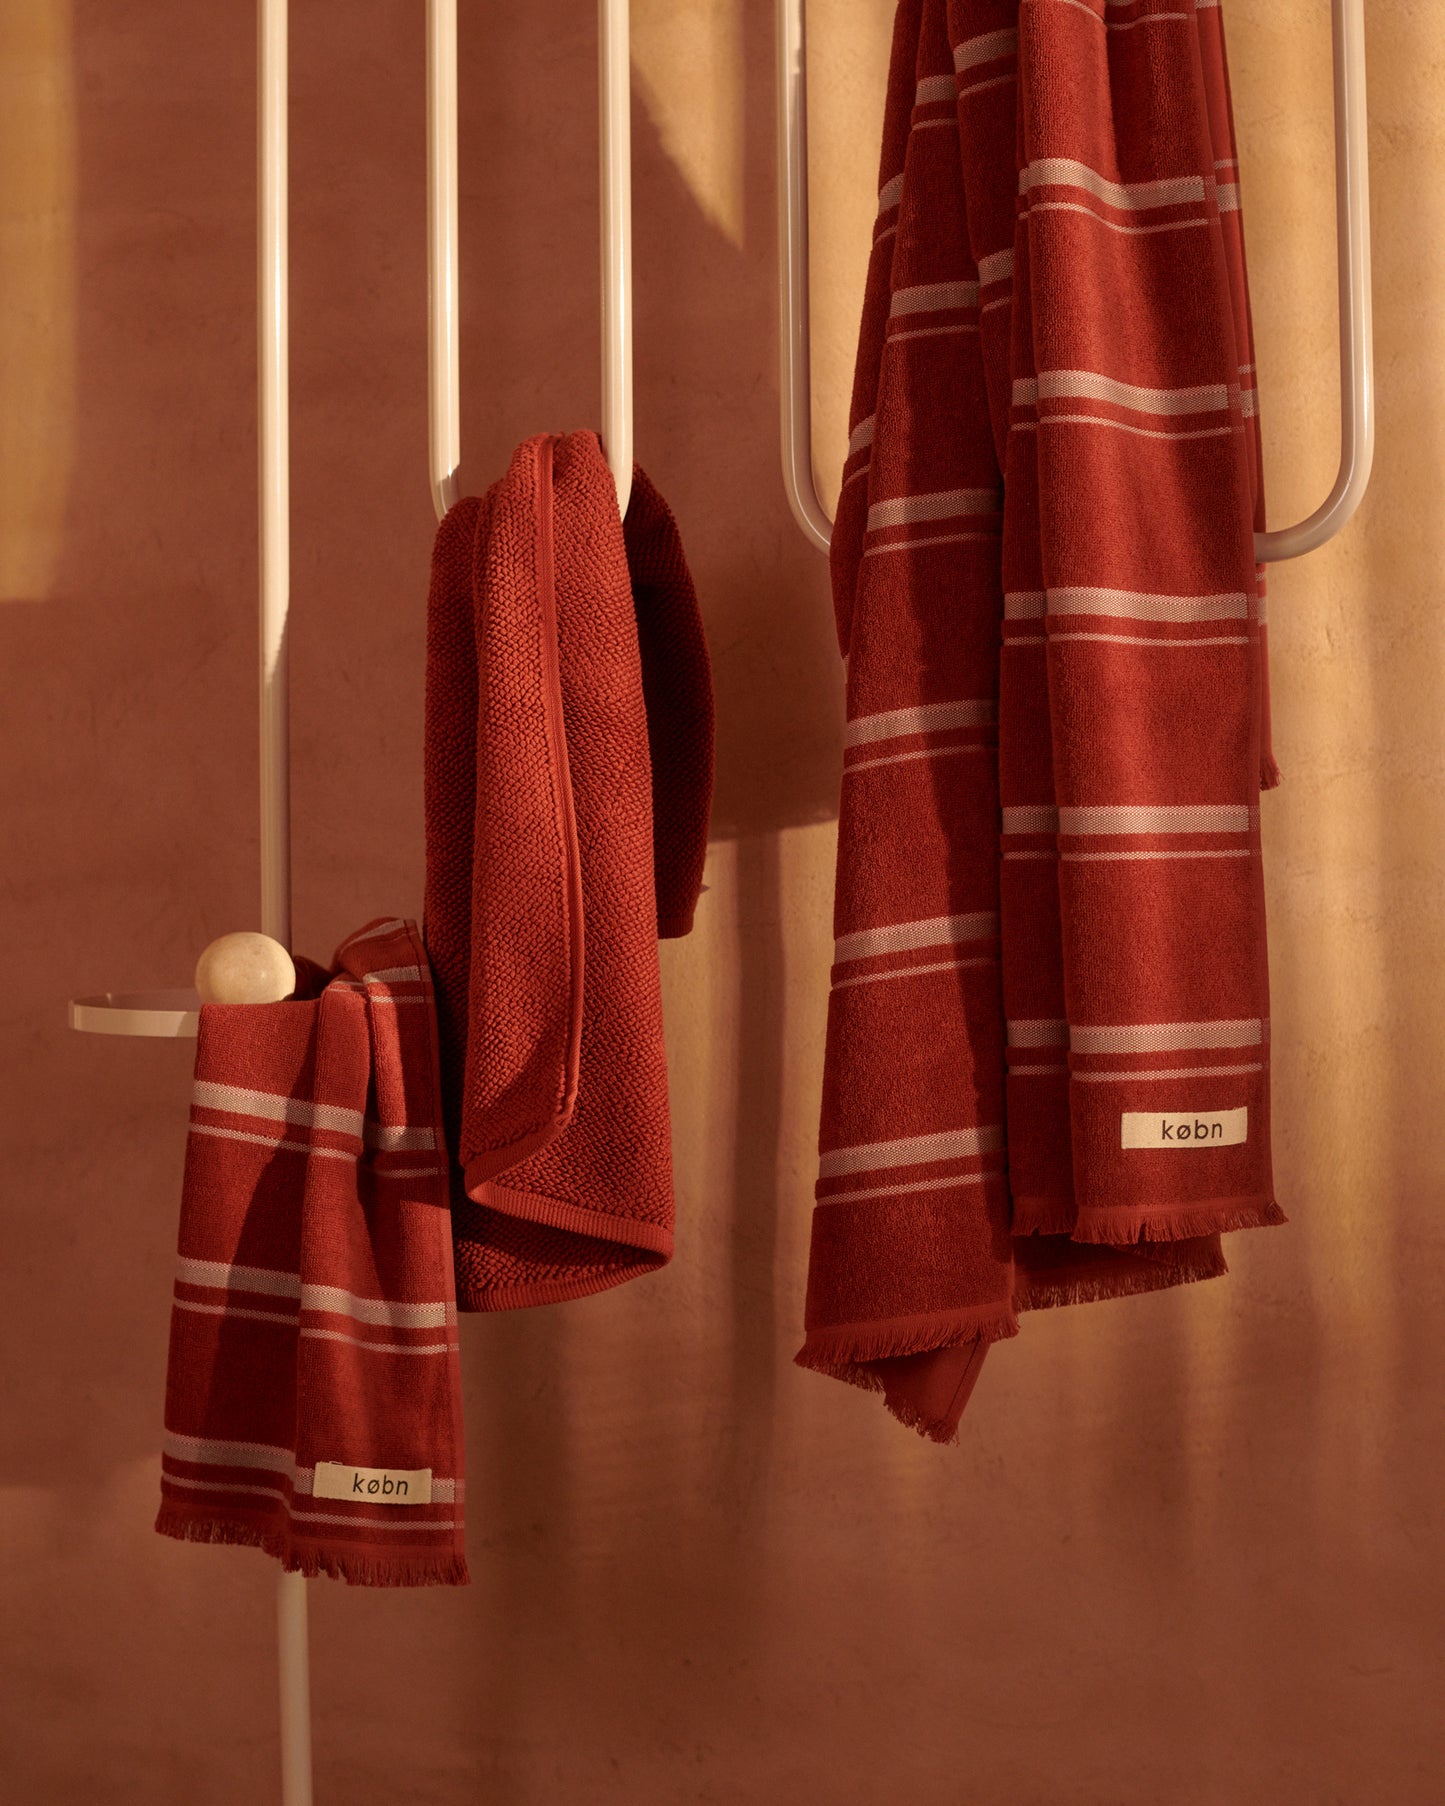 Kobn Jasper Towel Set on towel stand.